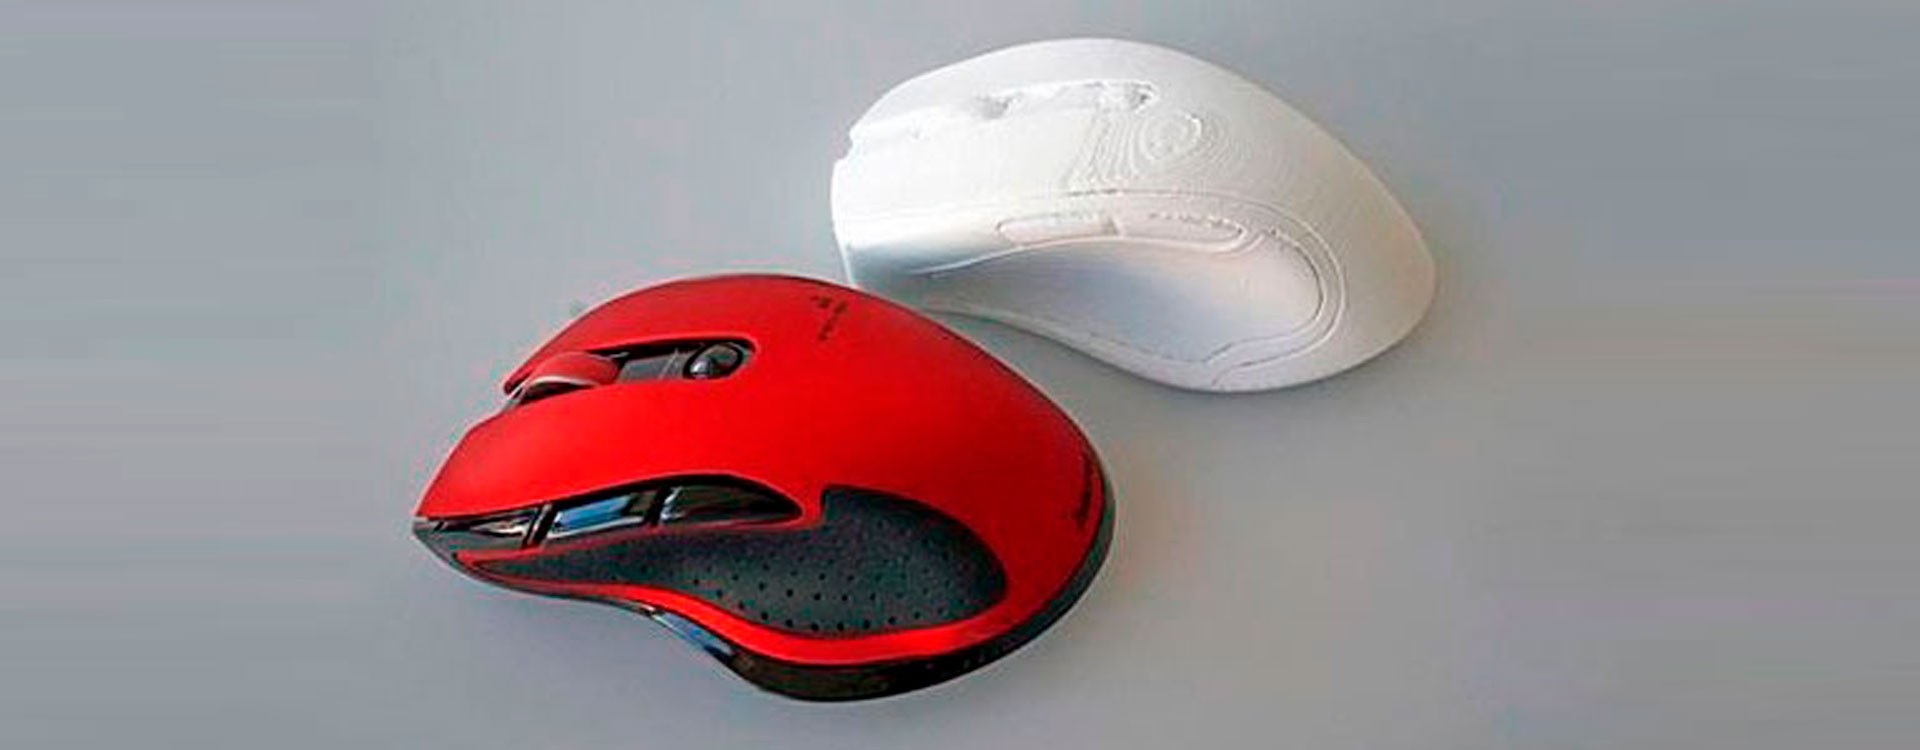 Электронный гигант Хама создает компьютерные мыши и инновационные аксессуары с помощью 3D-печати